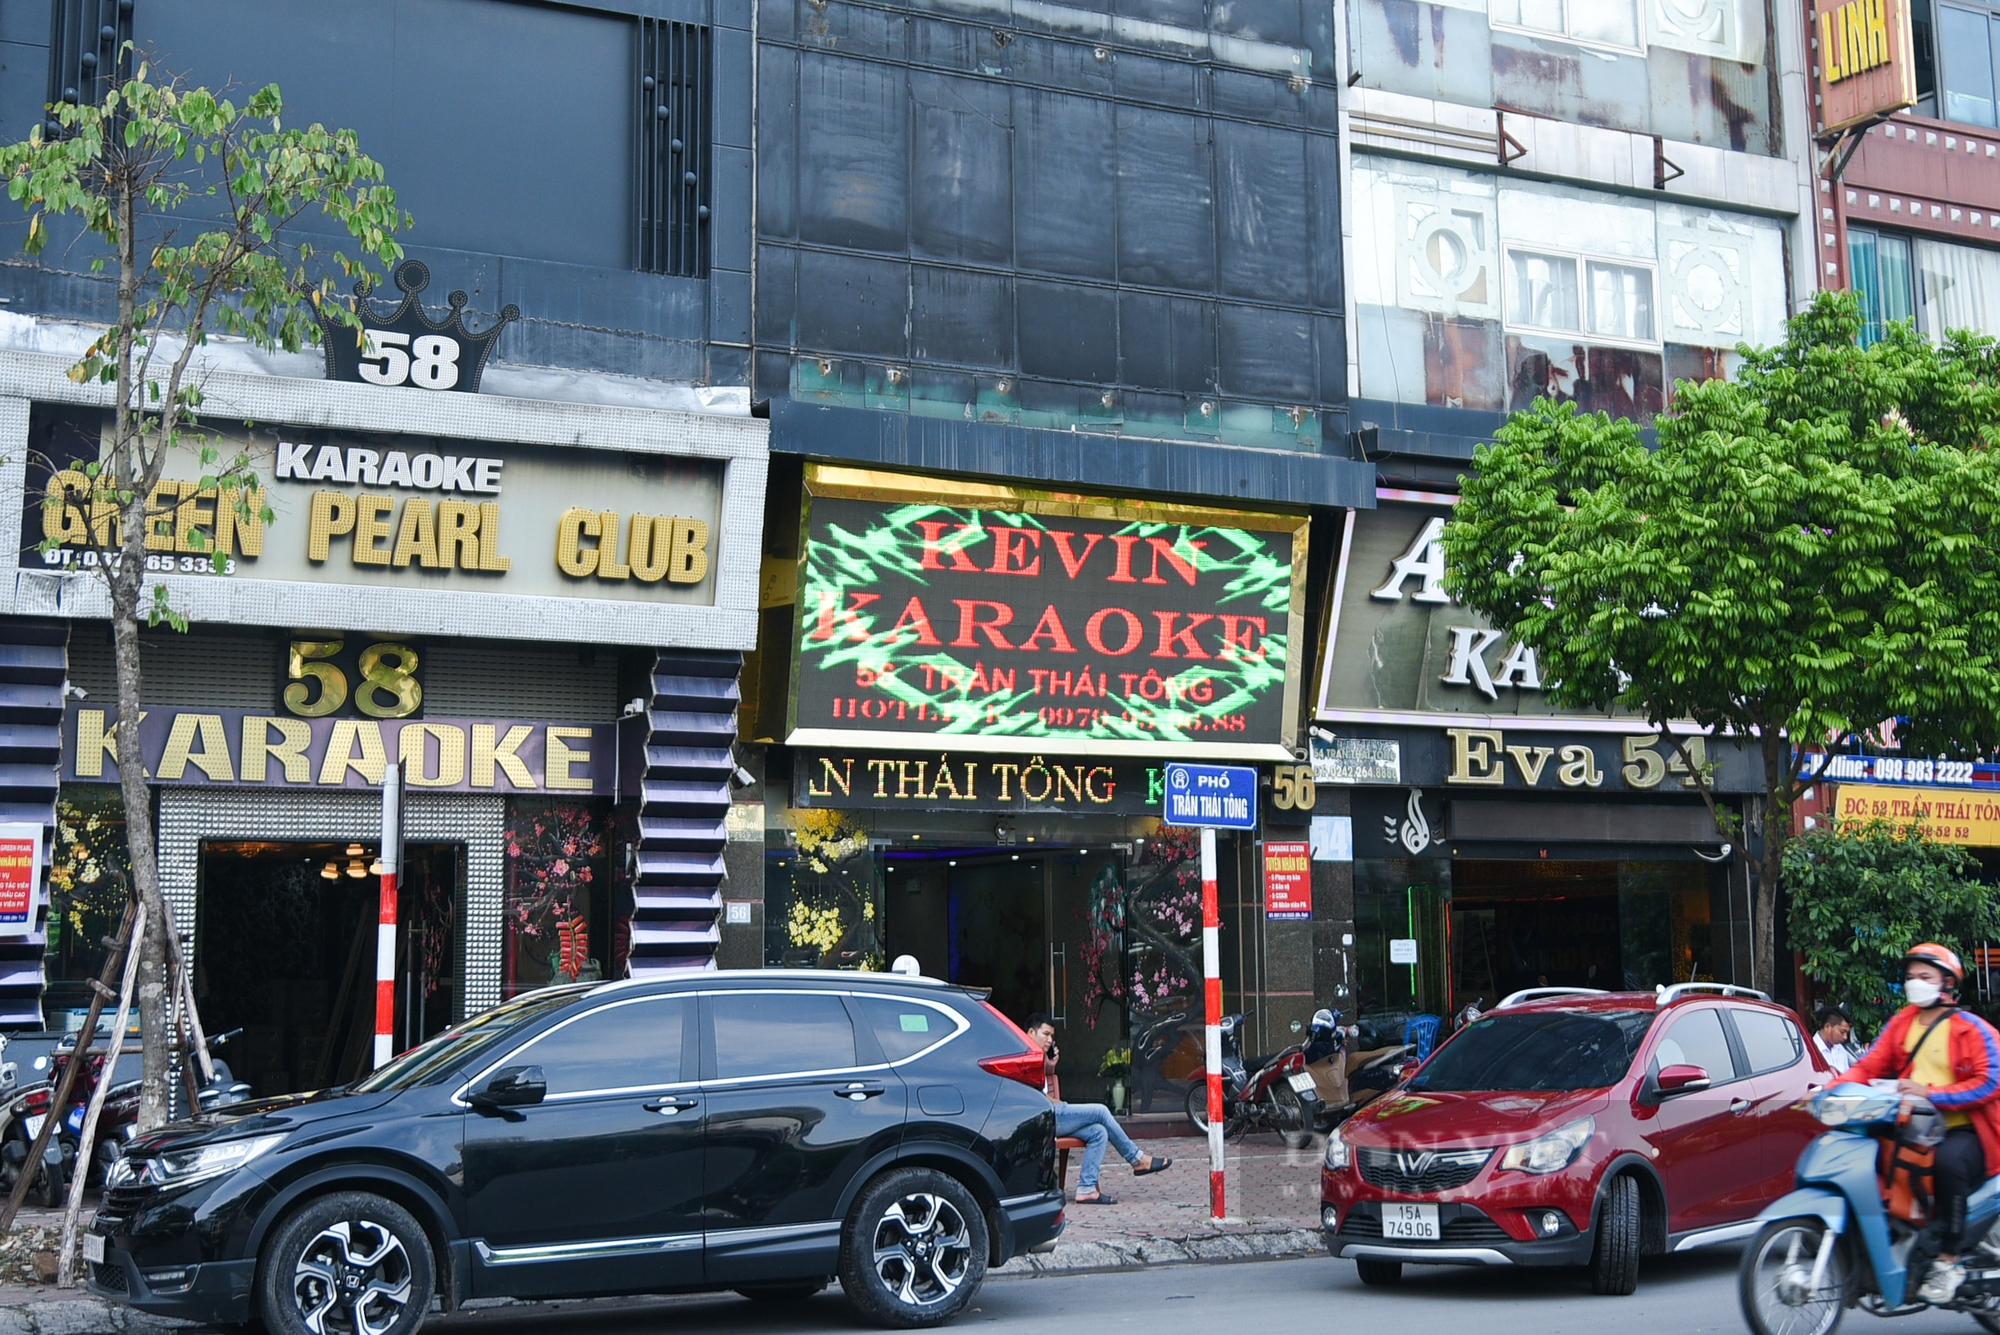 Sau hàng loạt vụ cháy, nhiều quán karaoke ở Hà Nội rơi vào tình trạng ế khách - Ảnh 2.